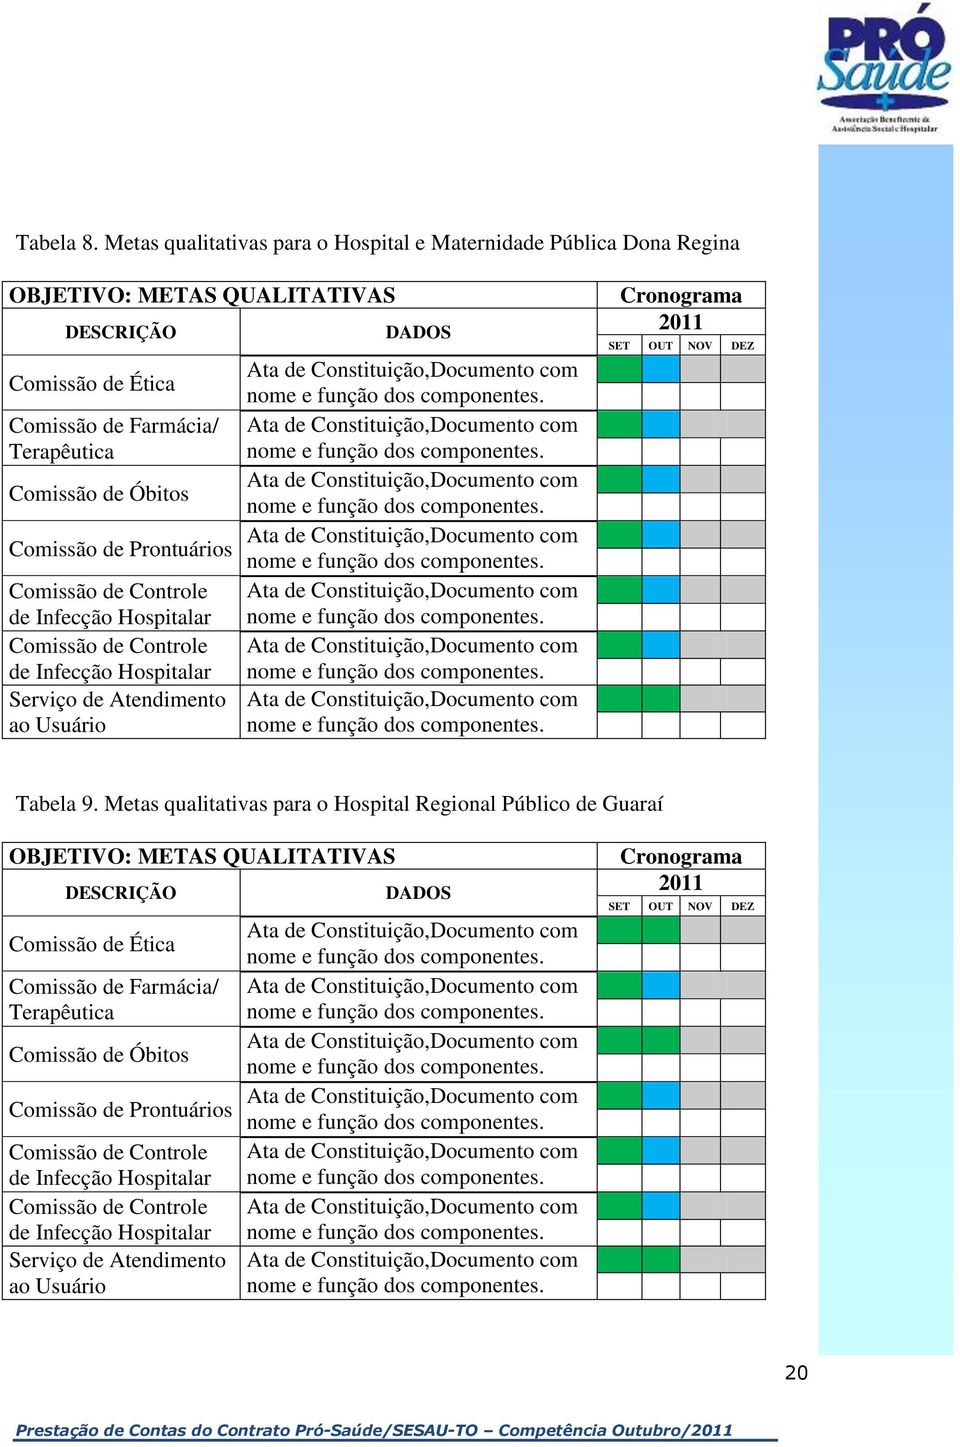 Prontuários Comissão de Controle de Infecção Hospitalar Comissão de Controle de Infecção Hospitalar Serviço de Atendimento ao Usuário Cronograma 2011 SET OUT NOV DEZ Tabela 9.